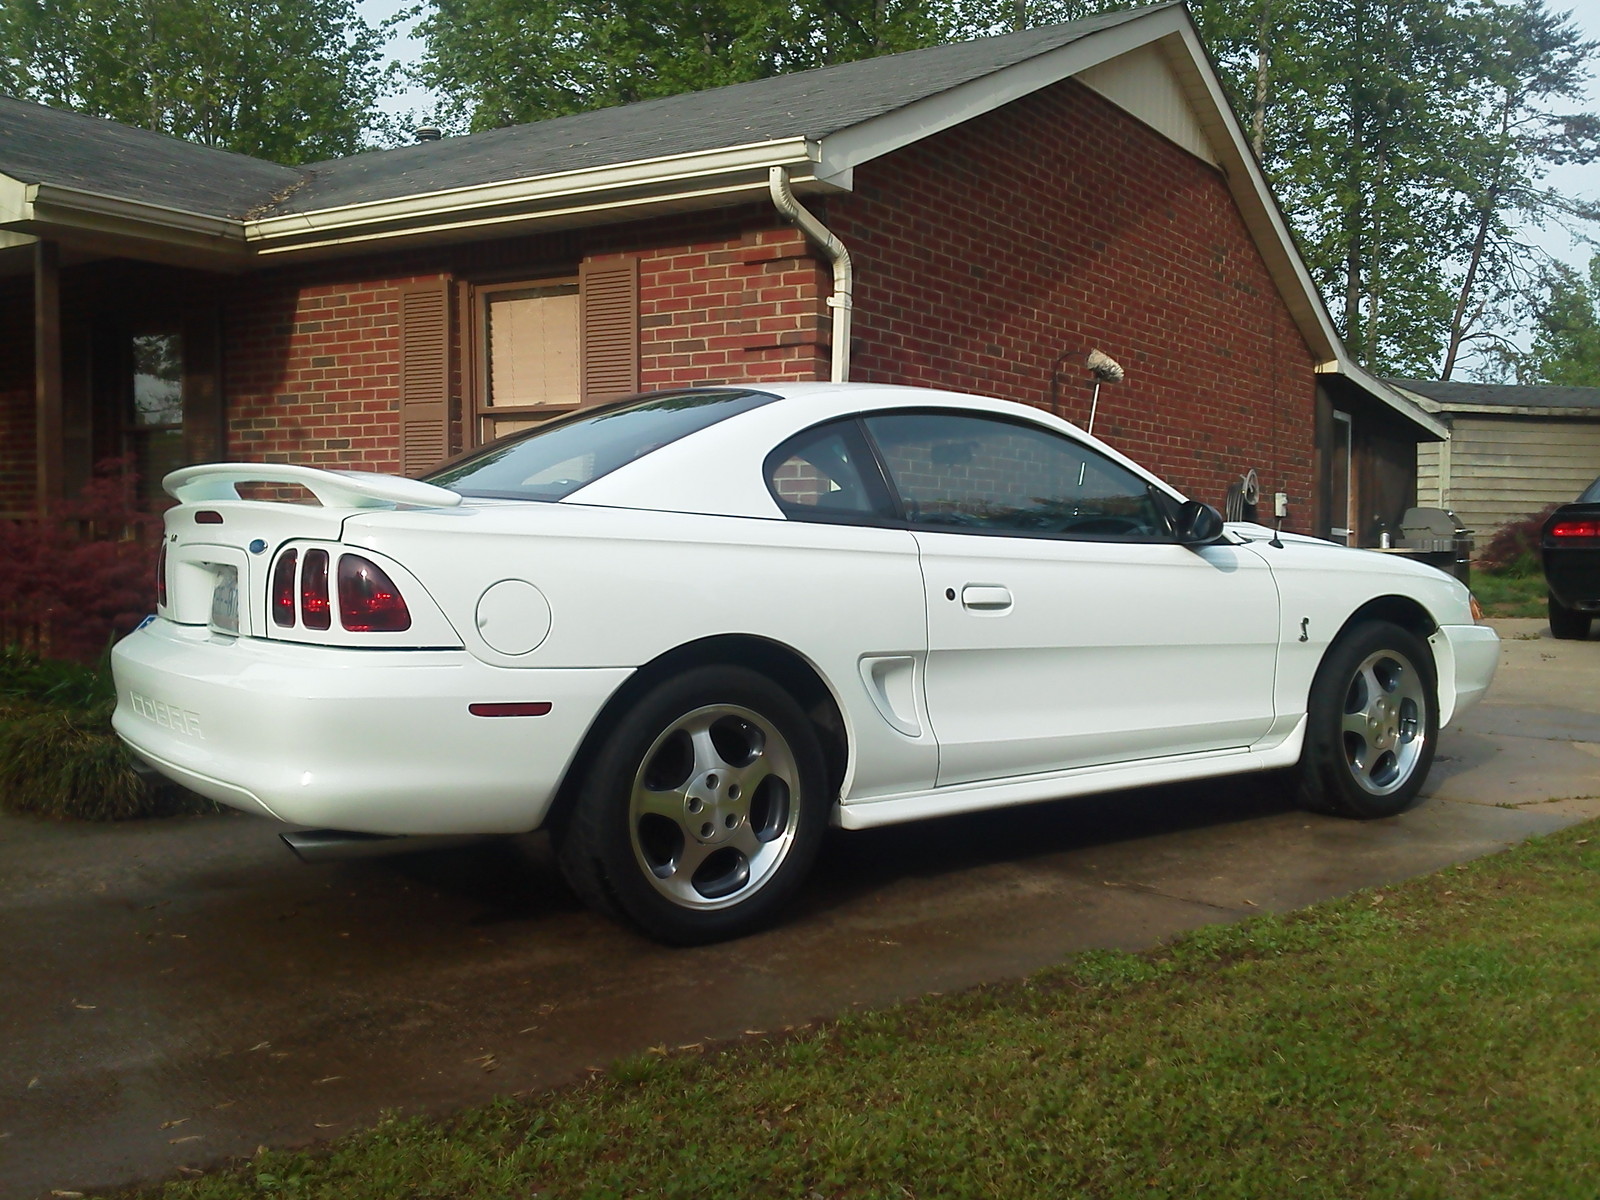 White 1997 Ford Mustang Cobra